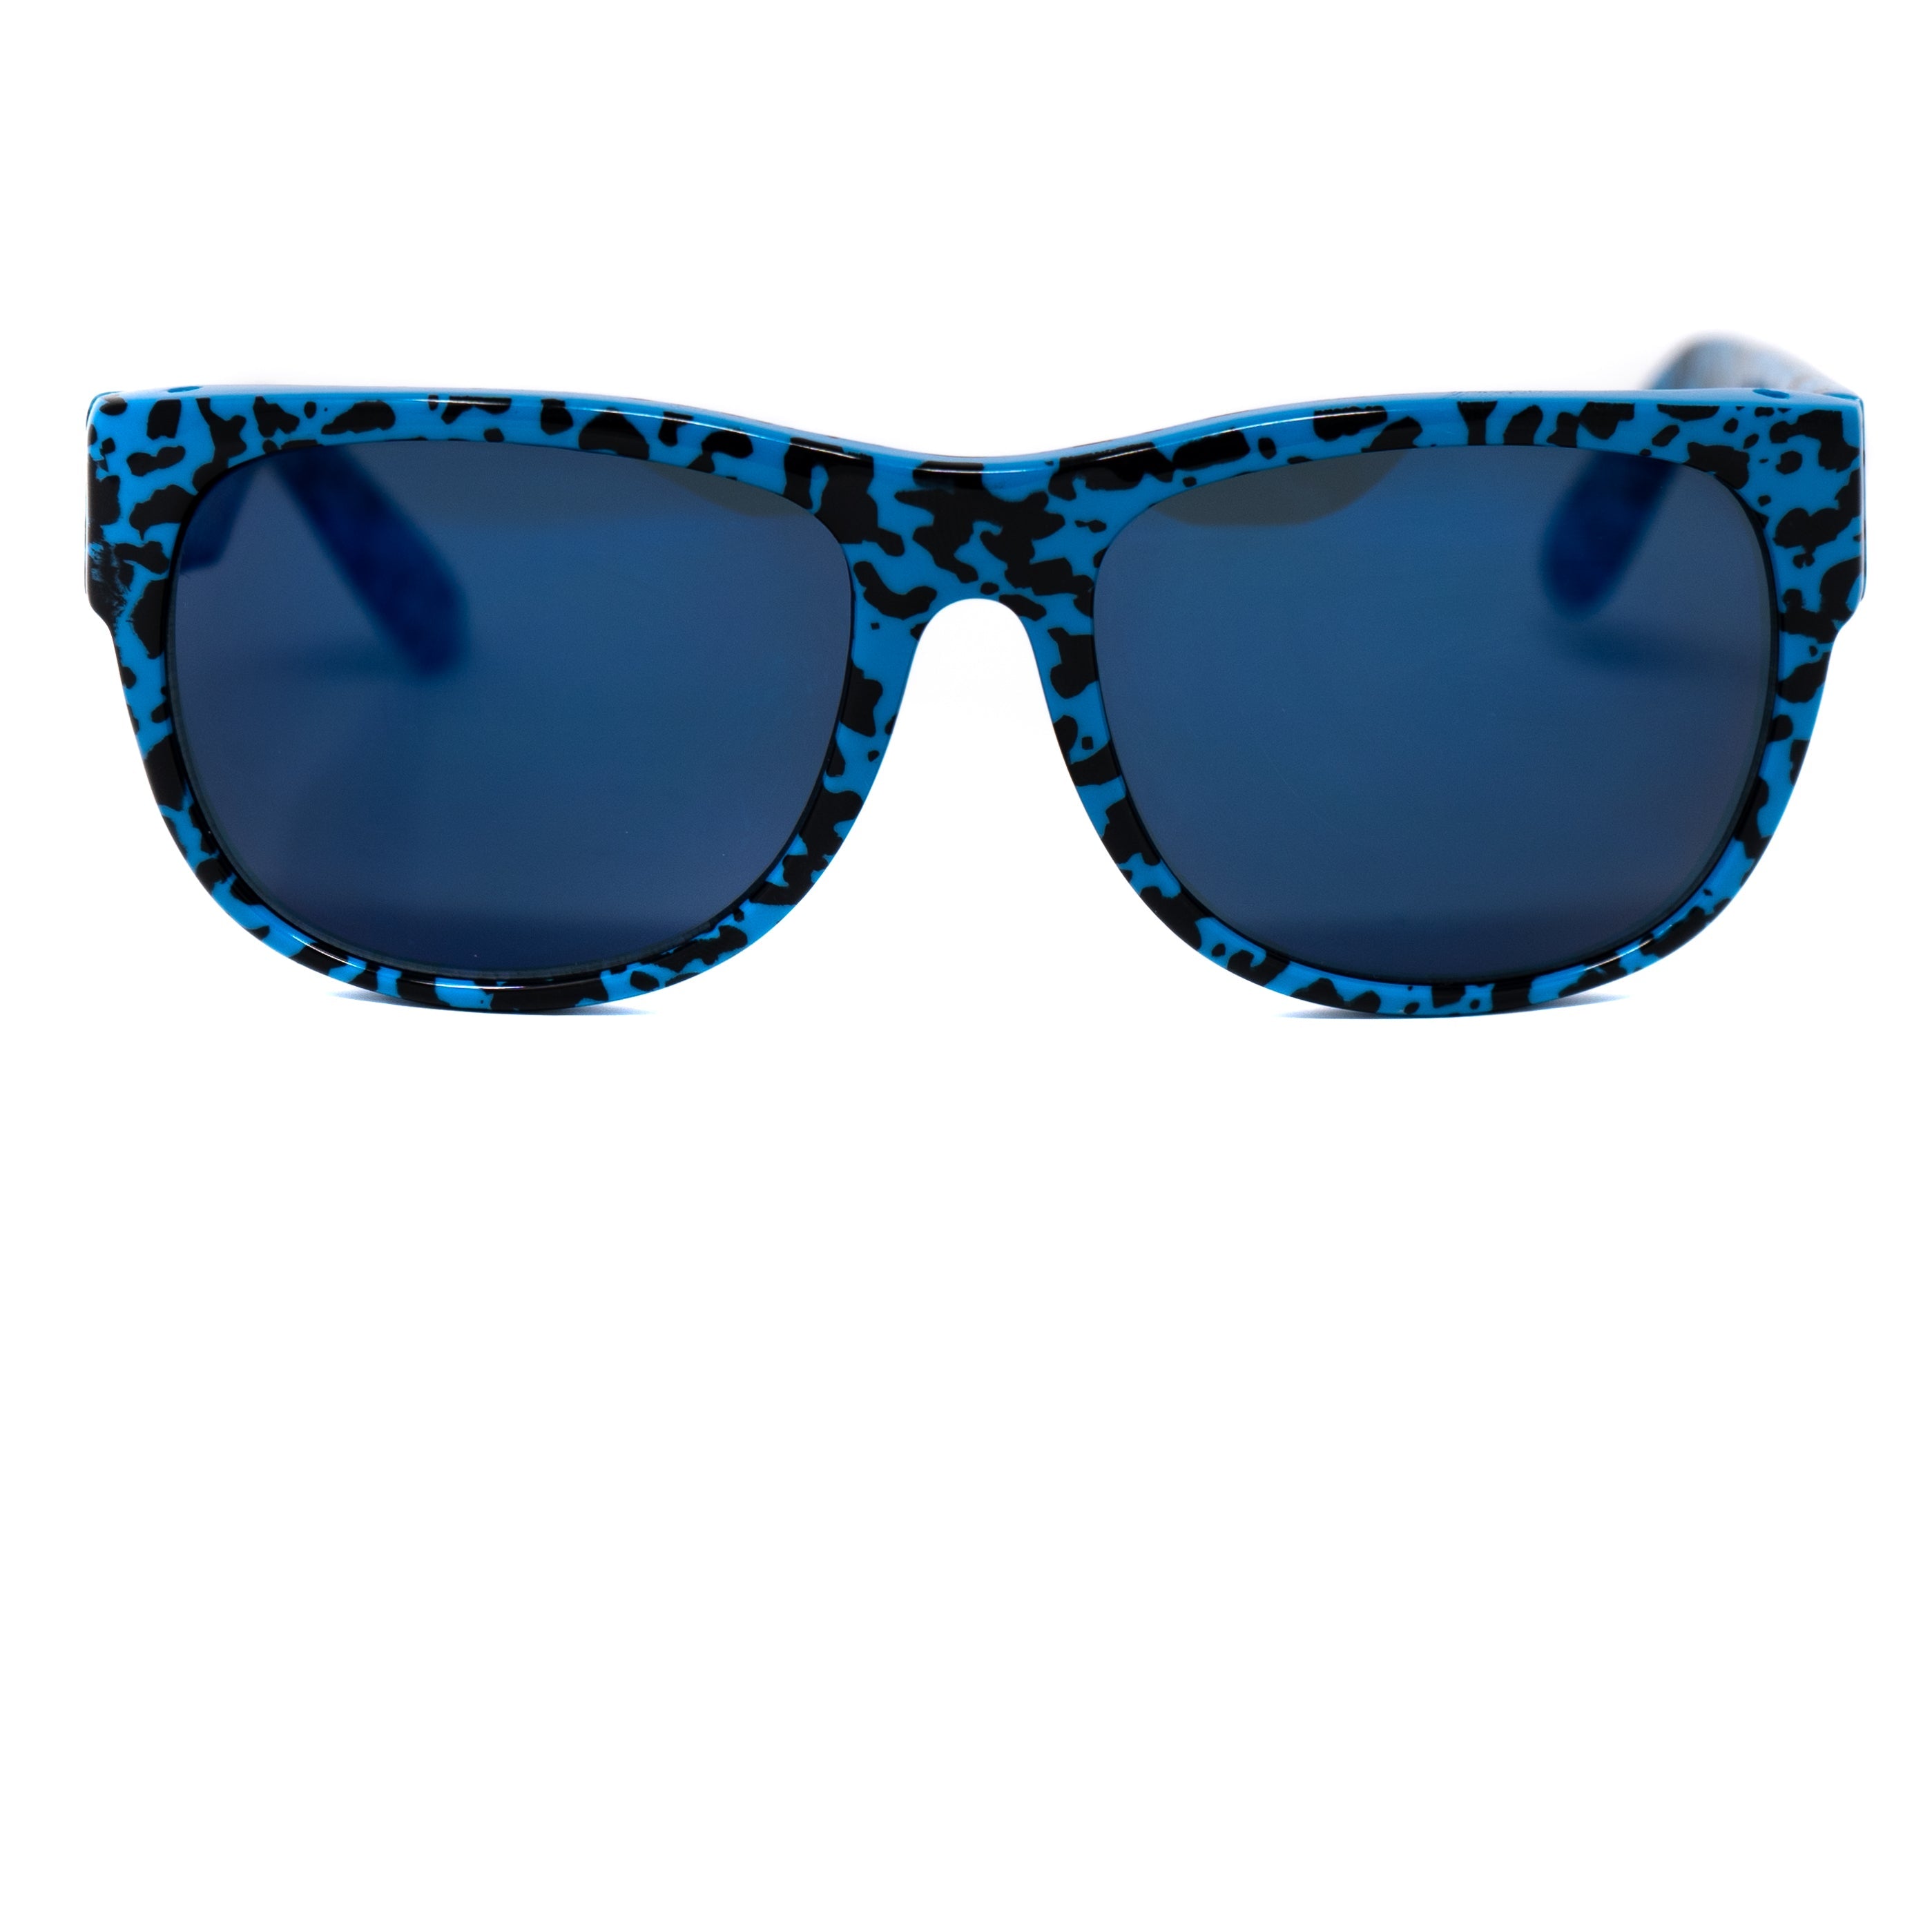 Bernard Willhelm Sunglasses Unisex Blue Visor Blue Mirror Lenses Cat 3